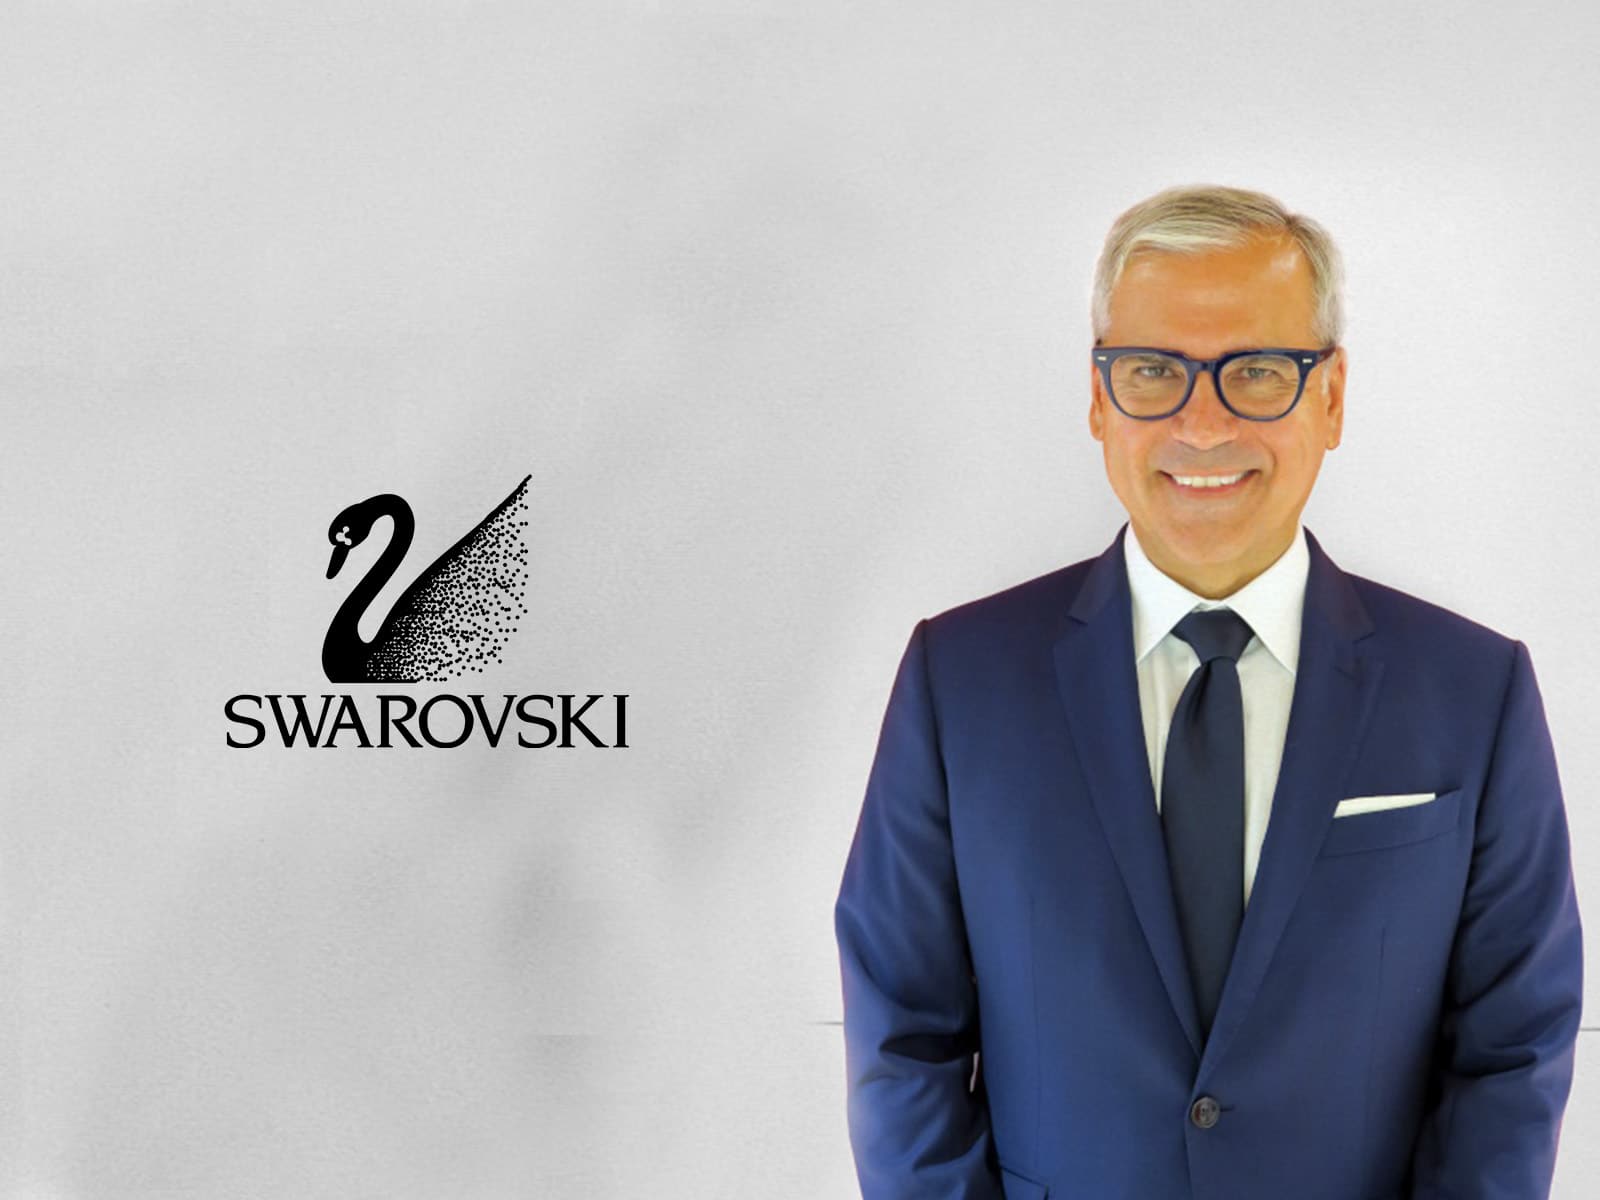 Swarovski nombra a Alexis Nasard como nuevo CEO y primero externo a la familia